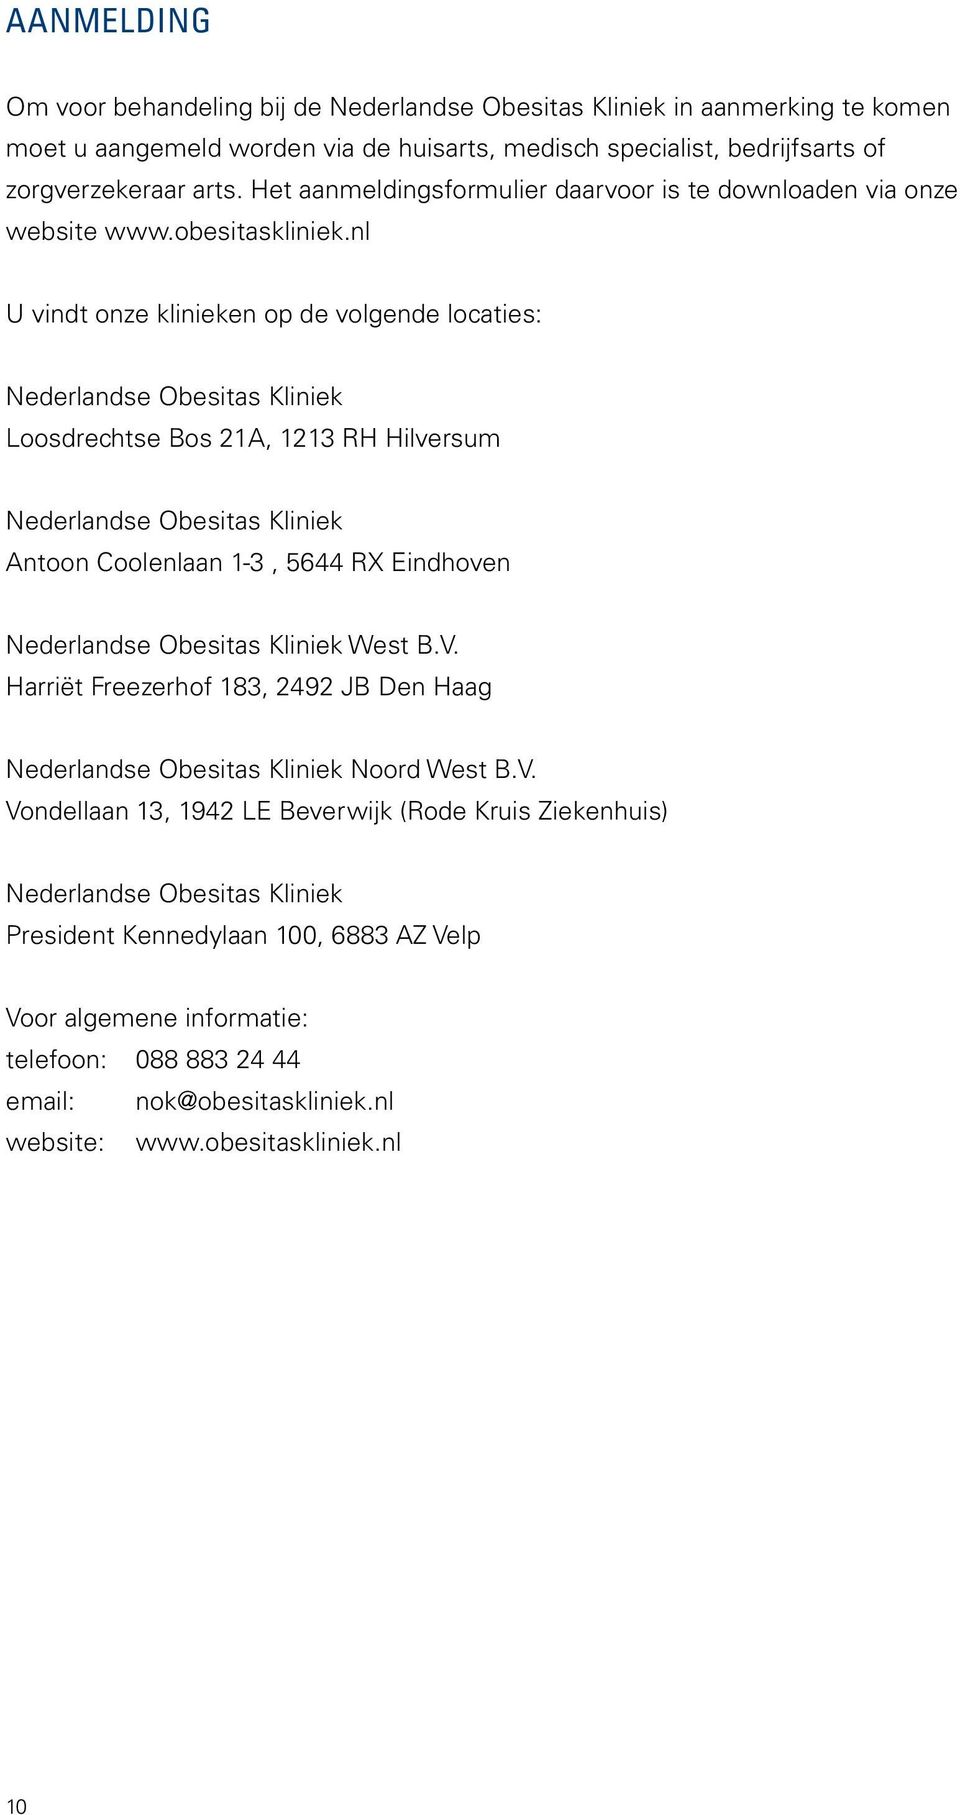 nl U vindt onze klinieken op de volgende locaties: Nederlandse Obesitas Kliniek Loosdrechtse Bos 21A, 1213 RH Hilversum Nederlandse Obesitas Kliniek Antoon Coolenlaan 1-3, 5644 RX Eindhoven